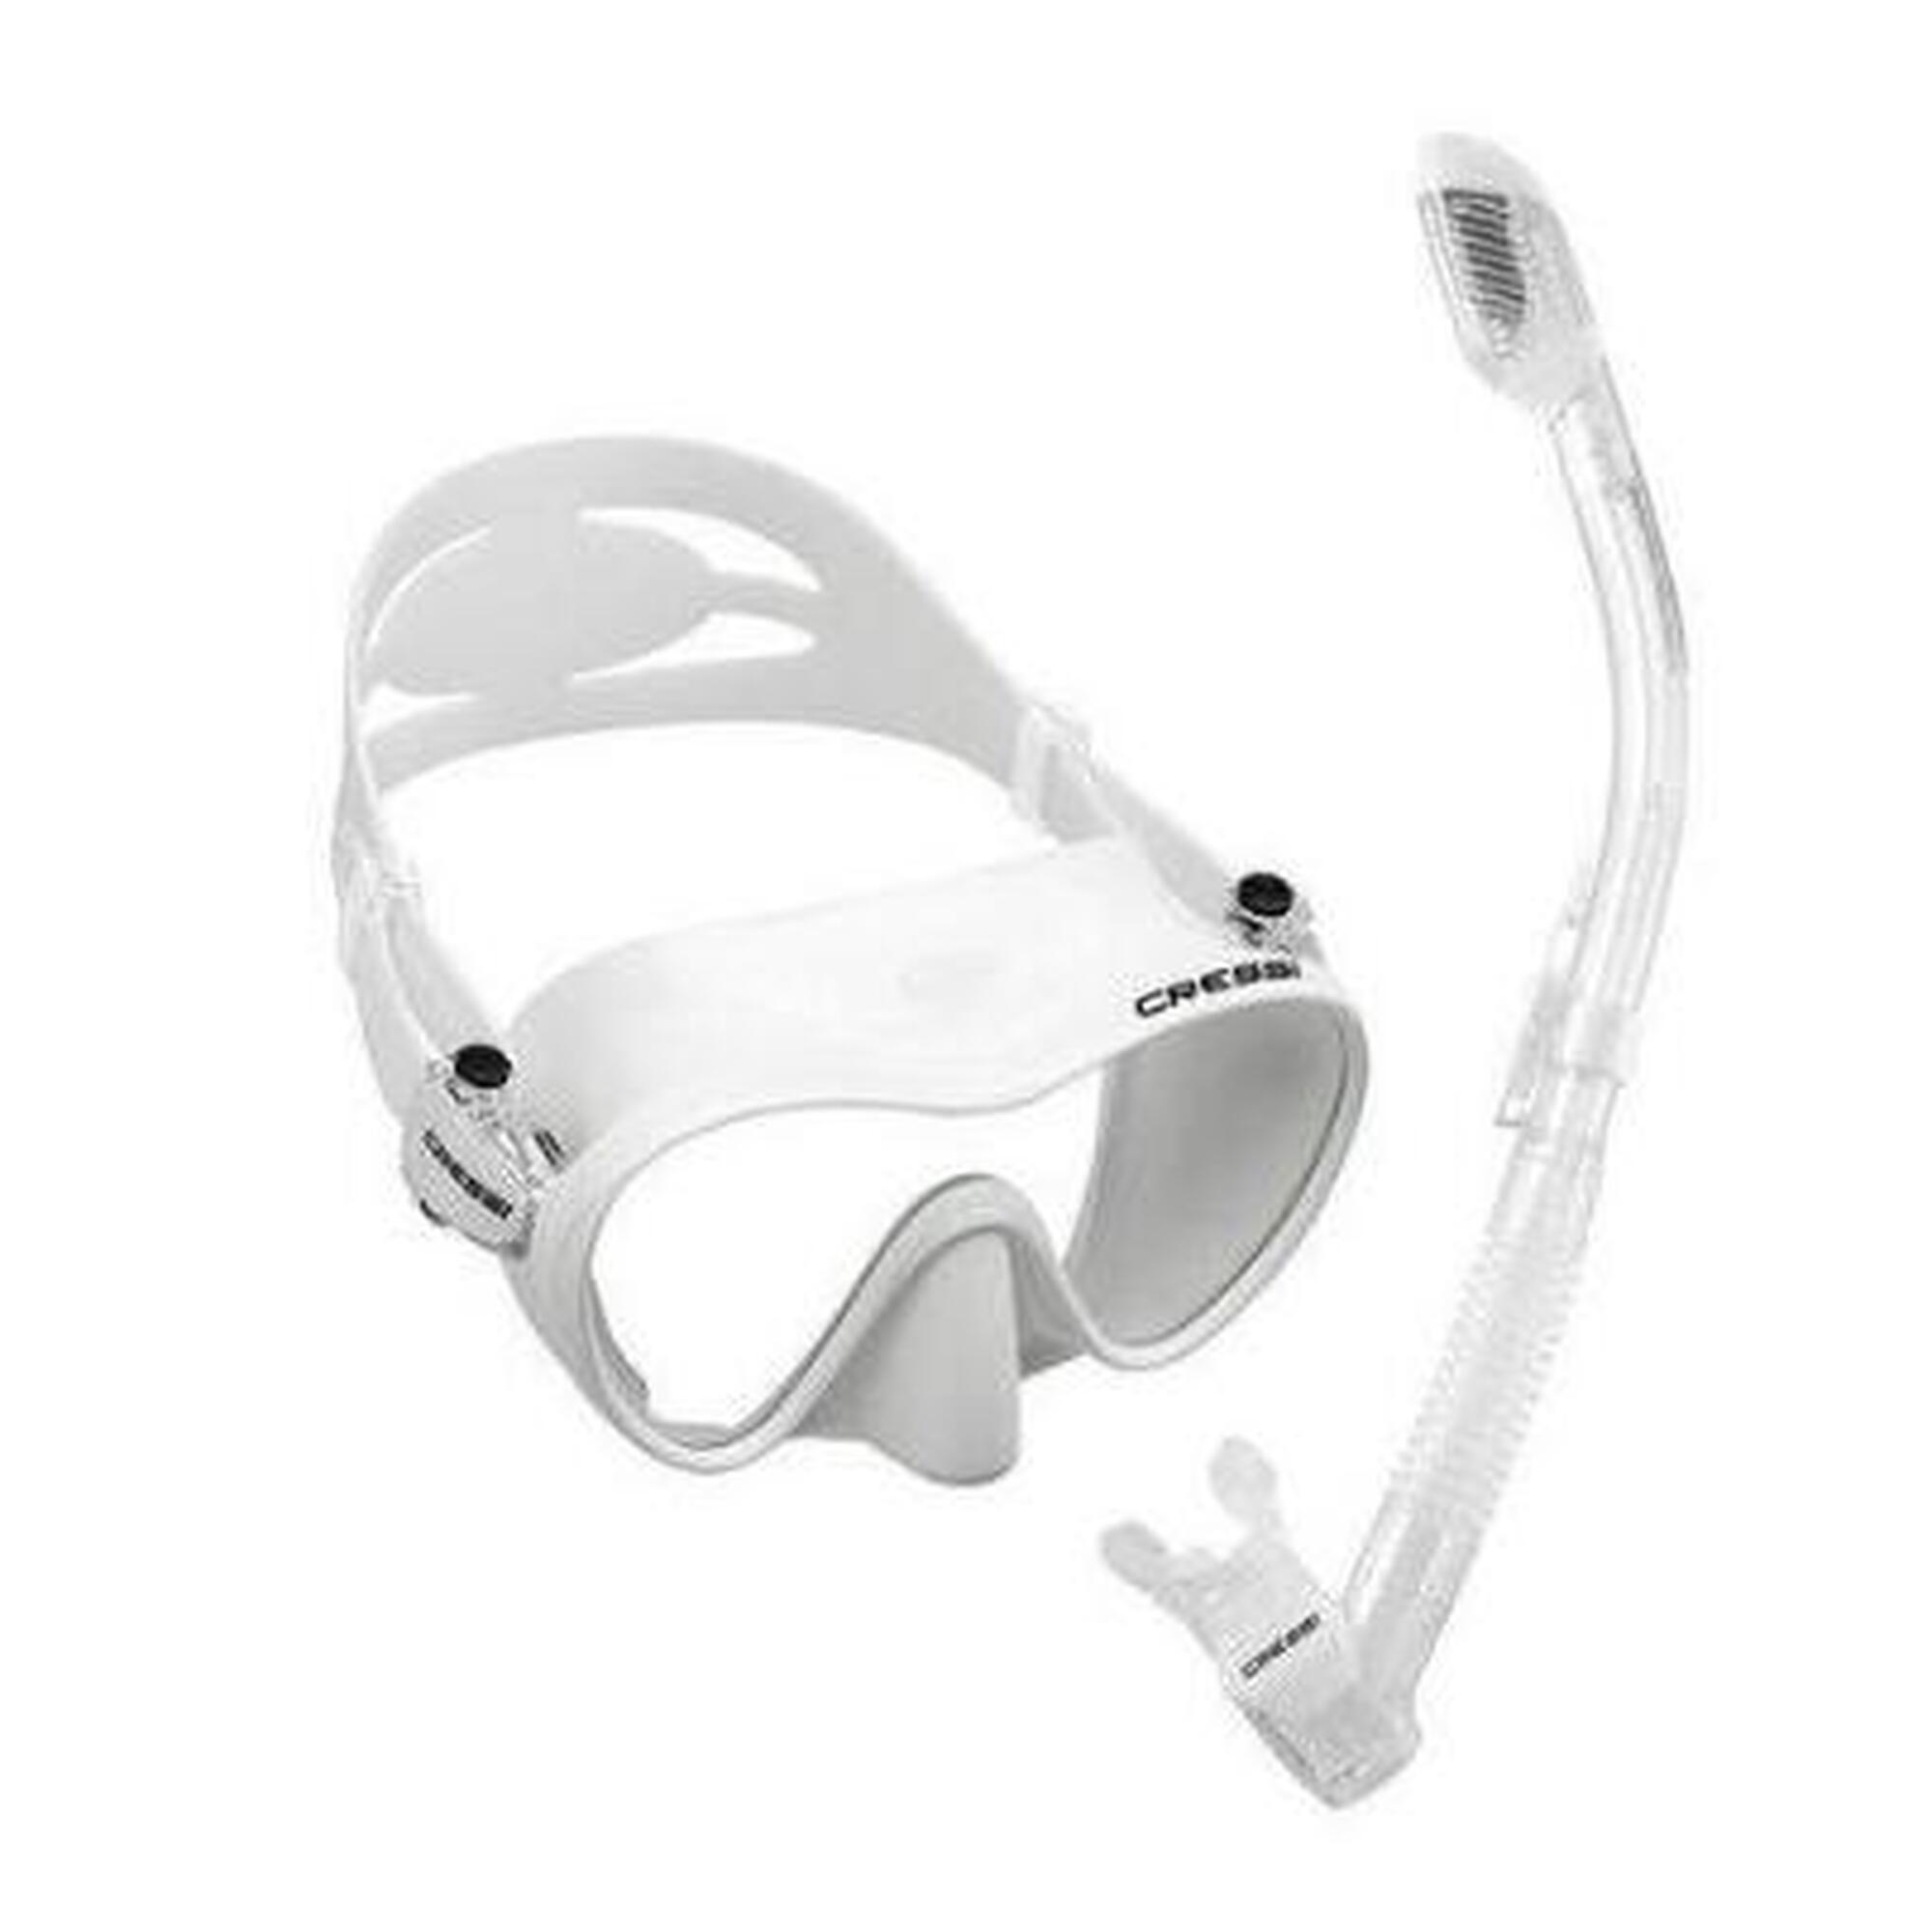 F1 Frameless 面鏡 + Dry 呼吸管組合 - 白色